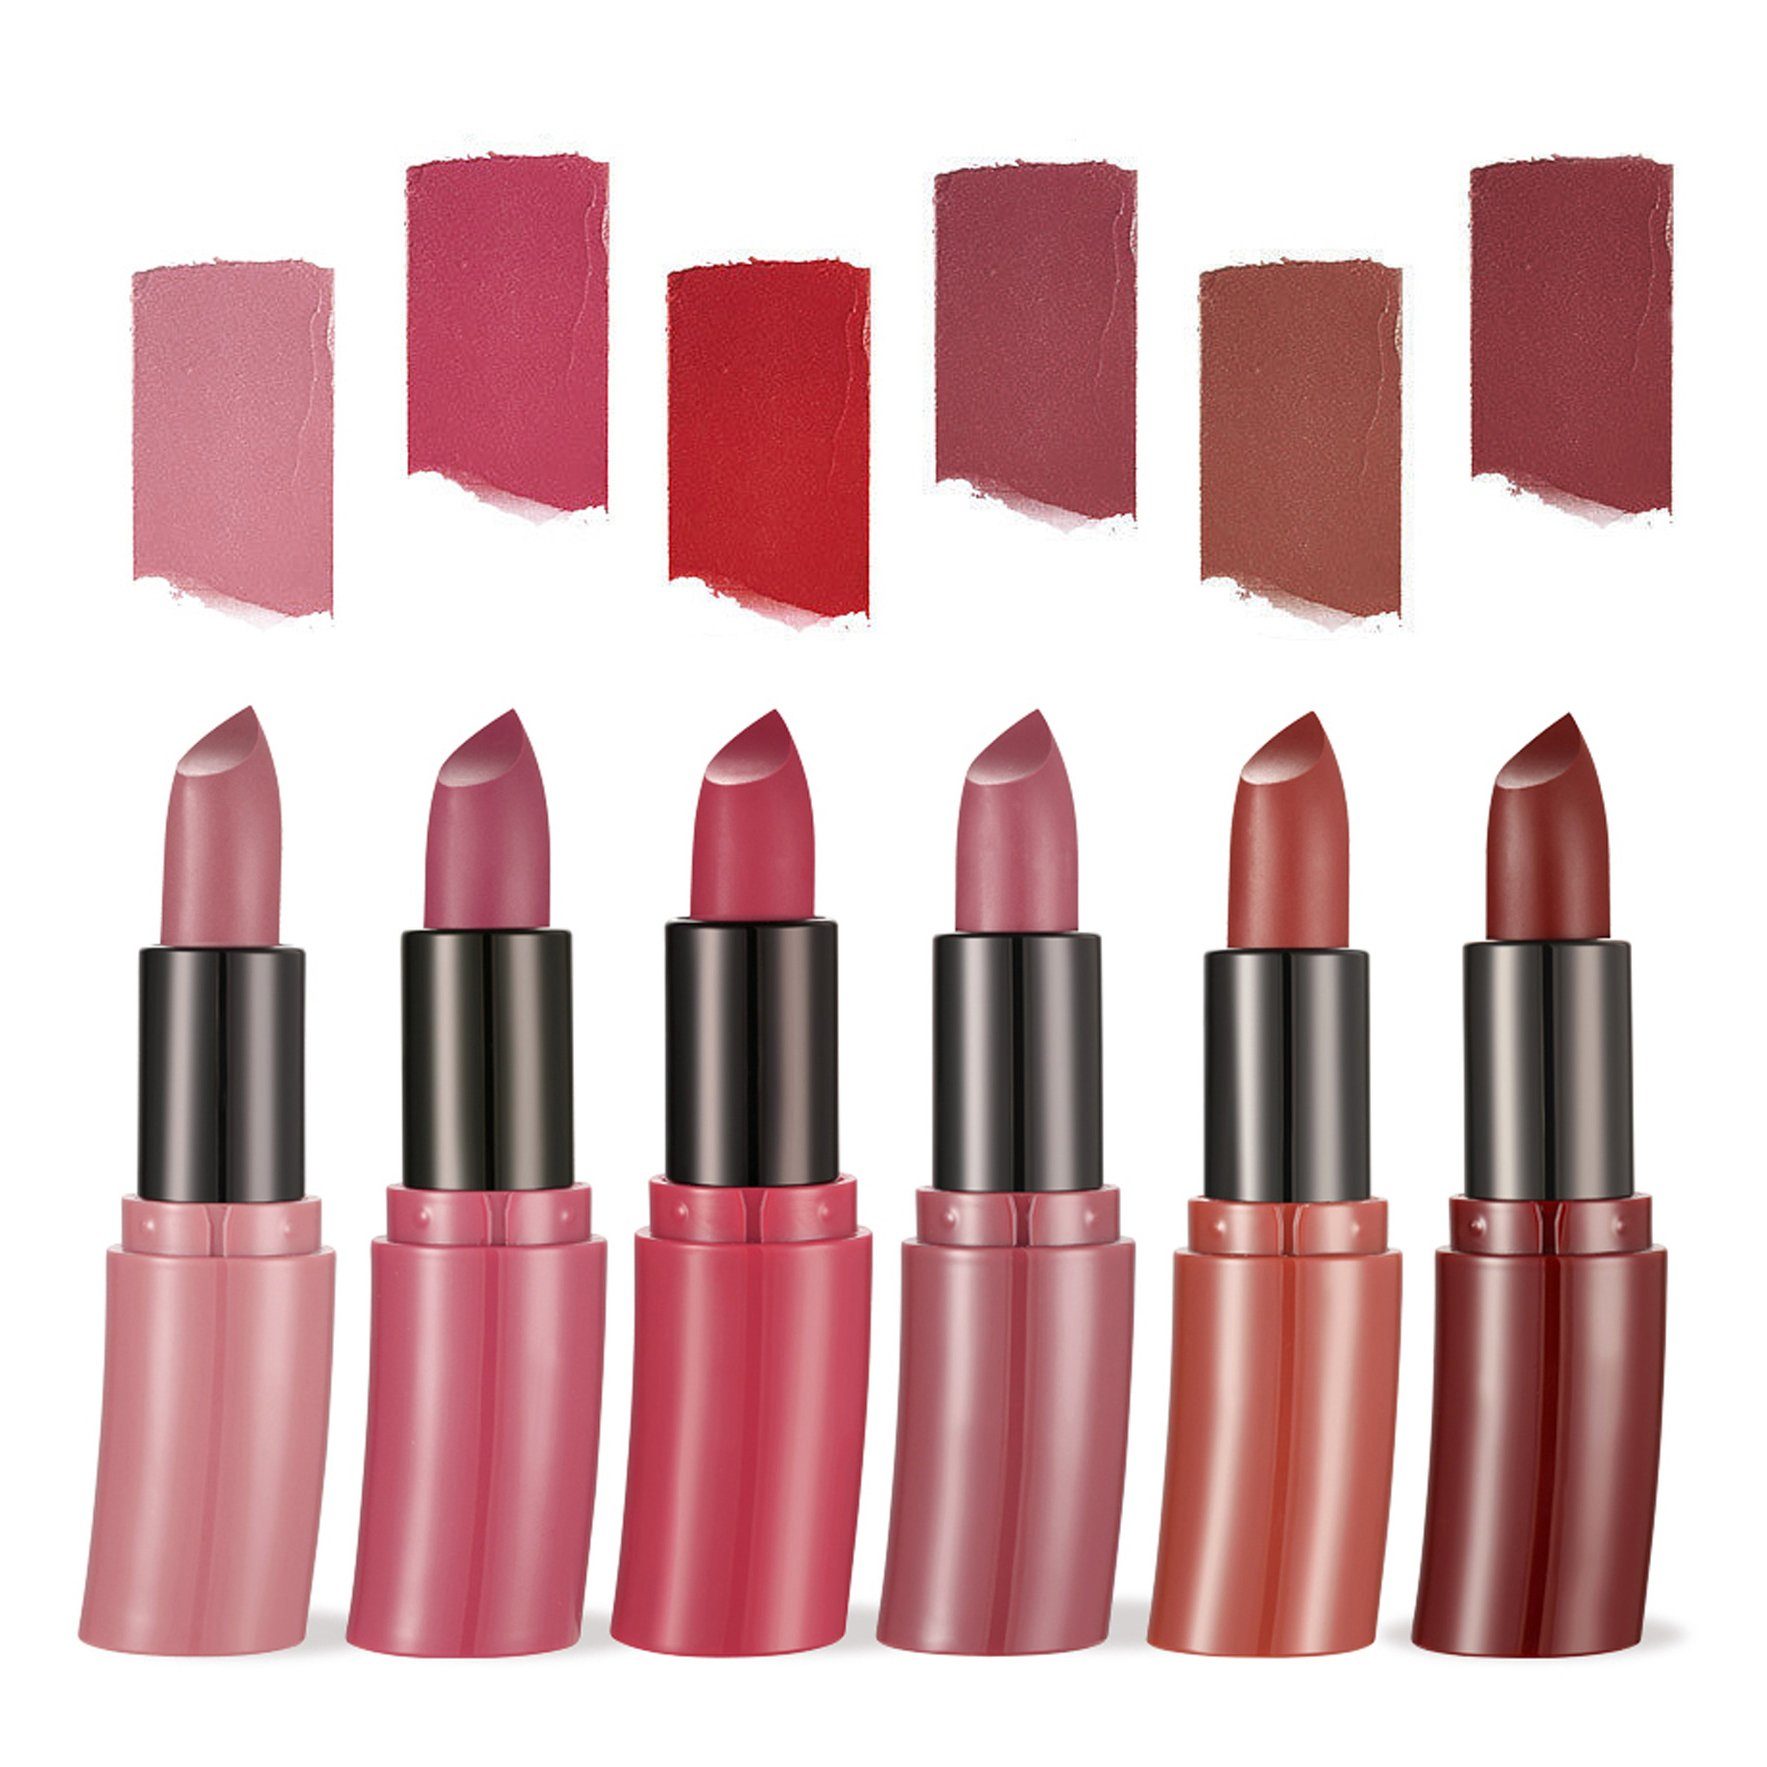 Haiaveng Lippenstift-Set 6 Farben Matt Ink Lippenstift Set Flüssiger Lippenstift Set, Samt Rot Nude Lipstick Wasserdichte Makeup Lippenstifte